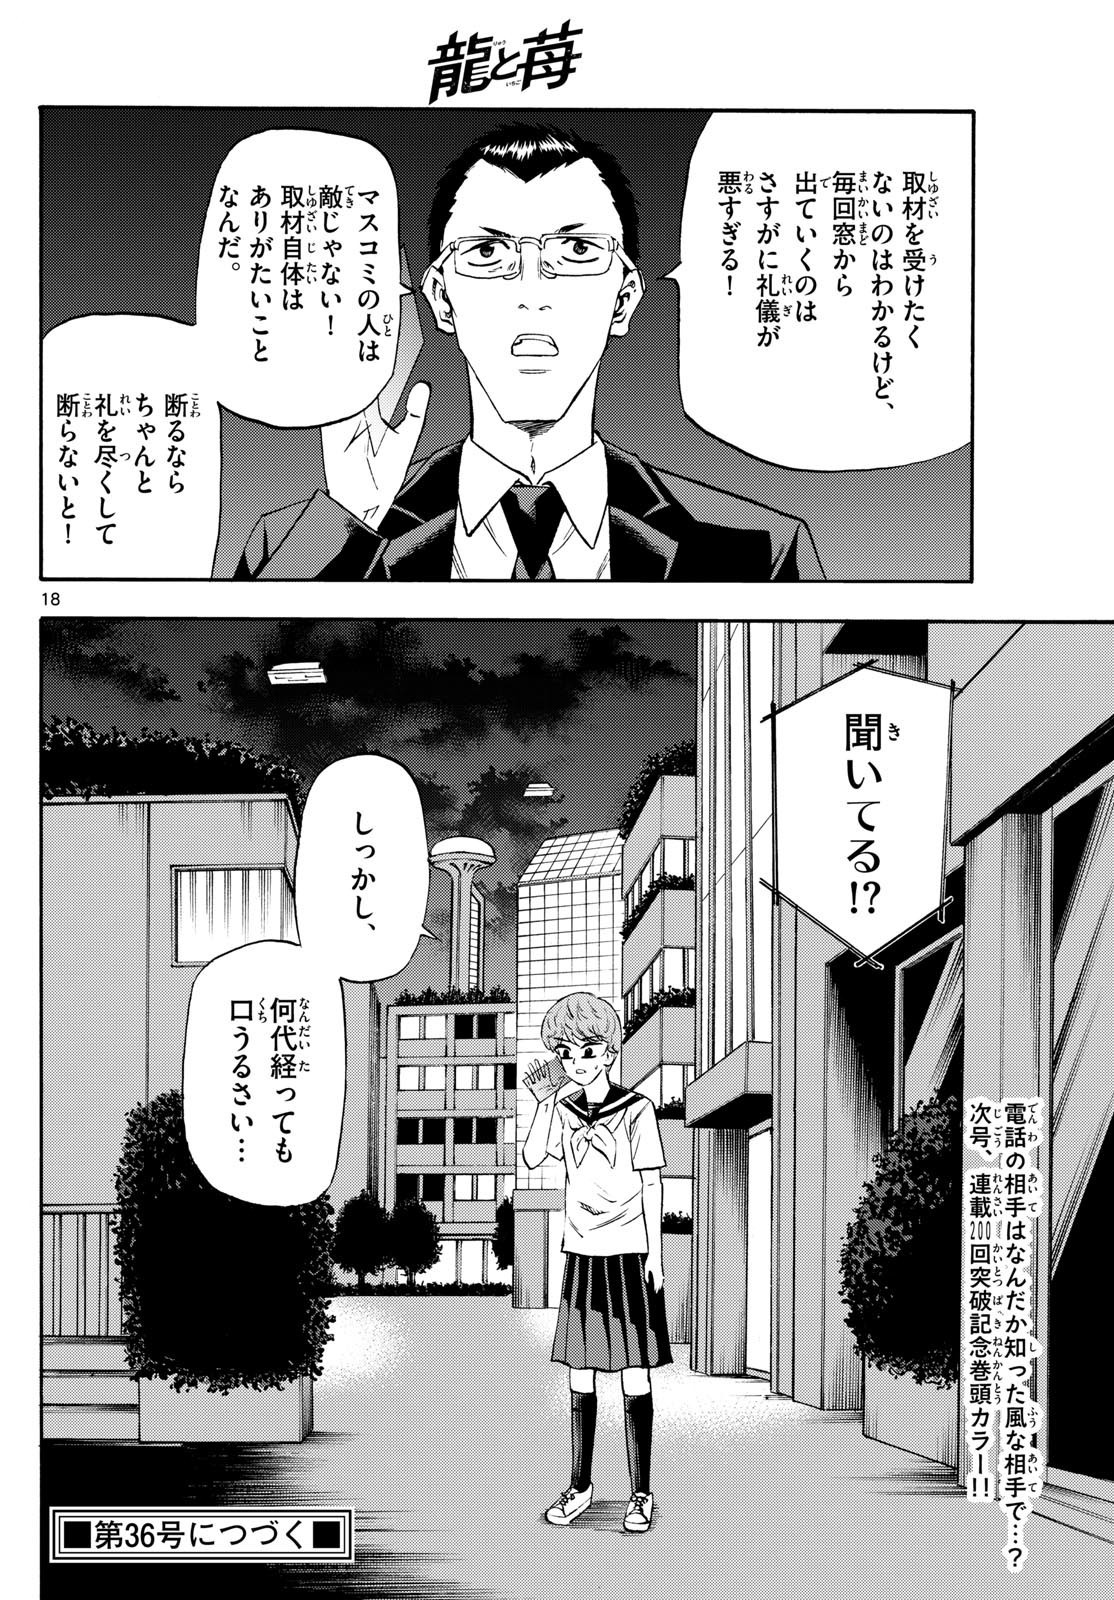 Ryu-to-Ichigo - Chapter 201 - Page 18